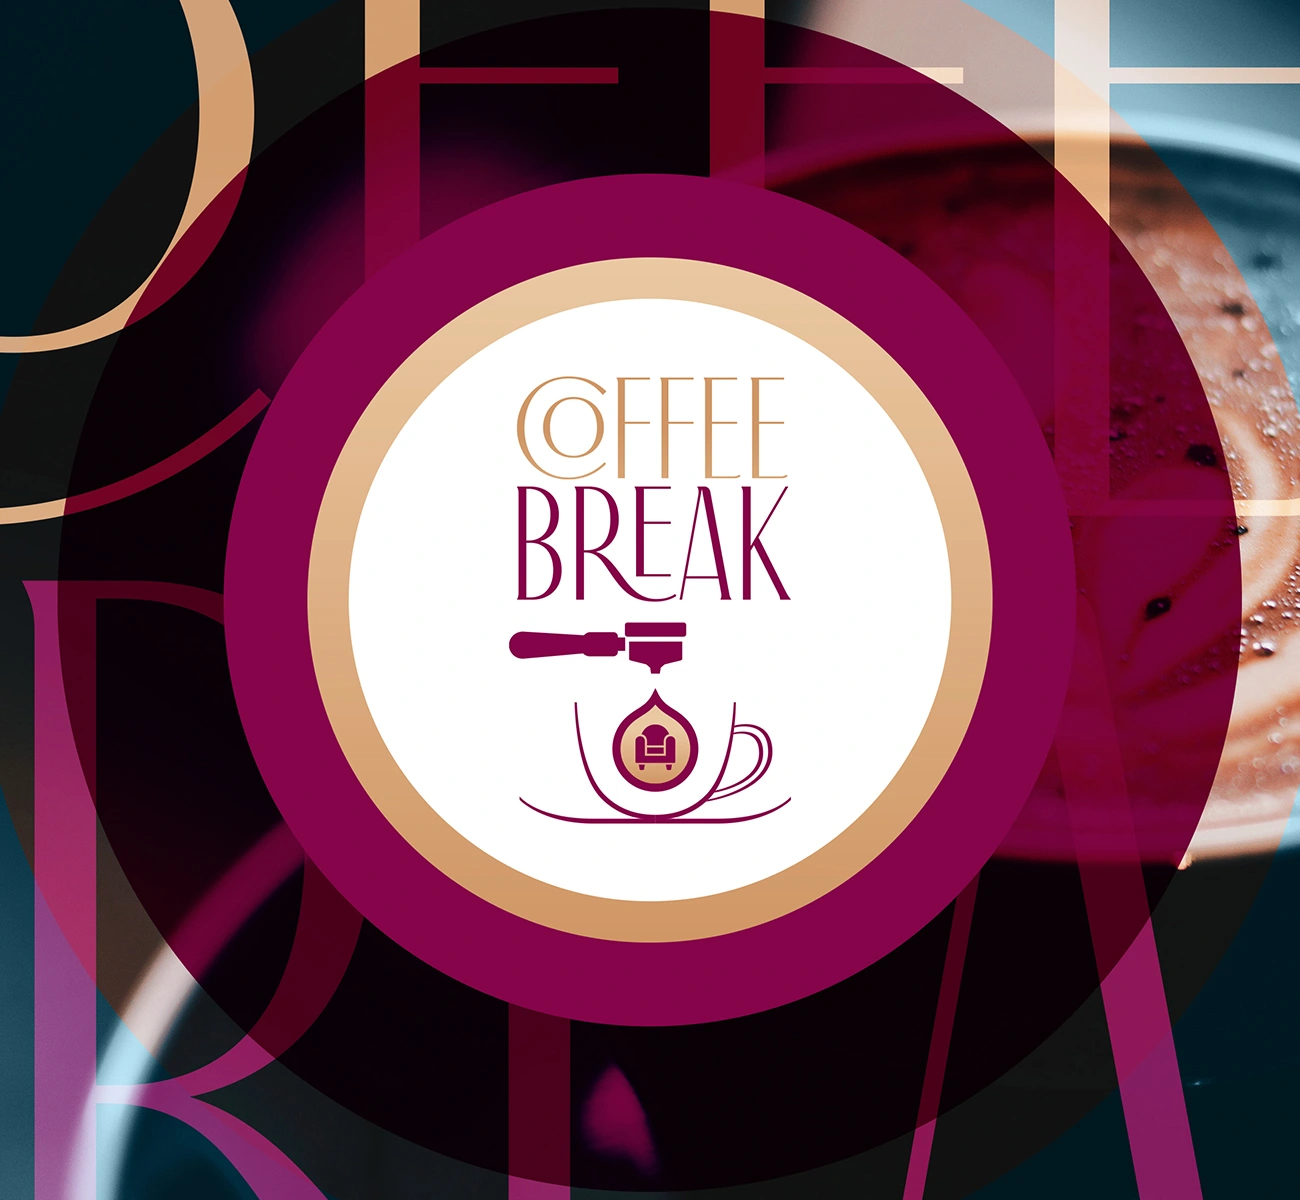 Image couverture projet style frames générique Coffee Break page portfolio